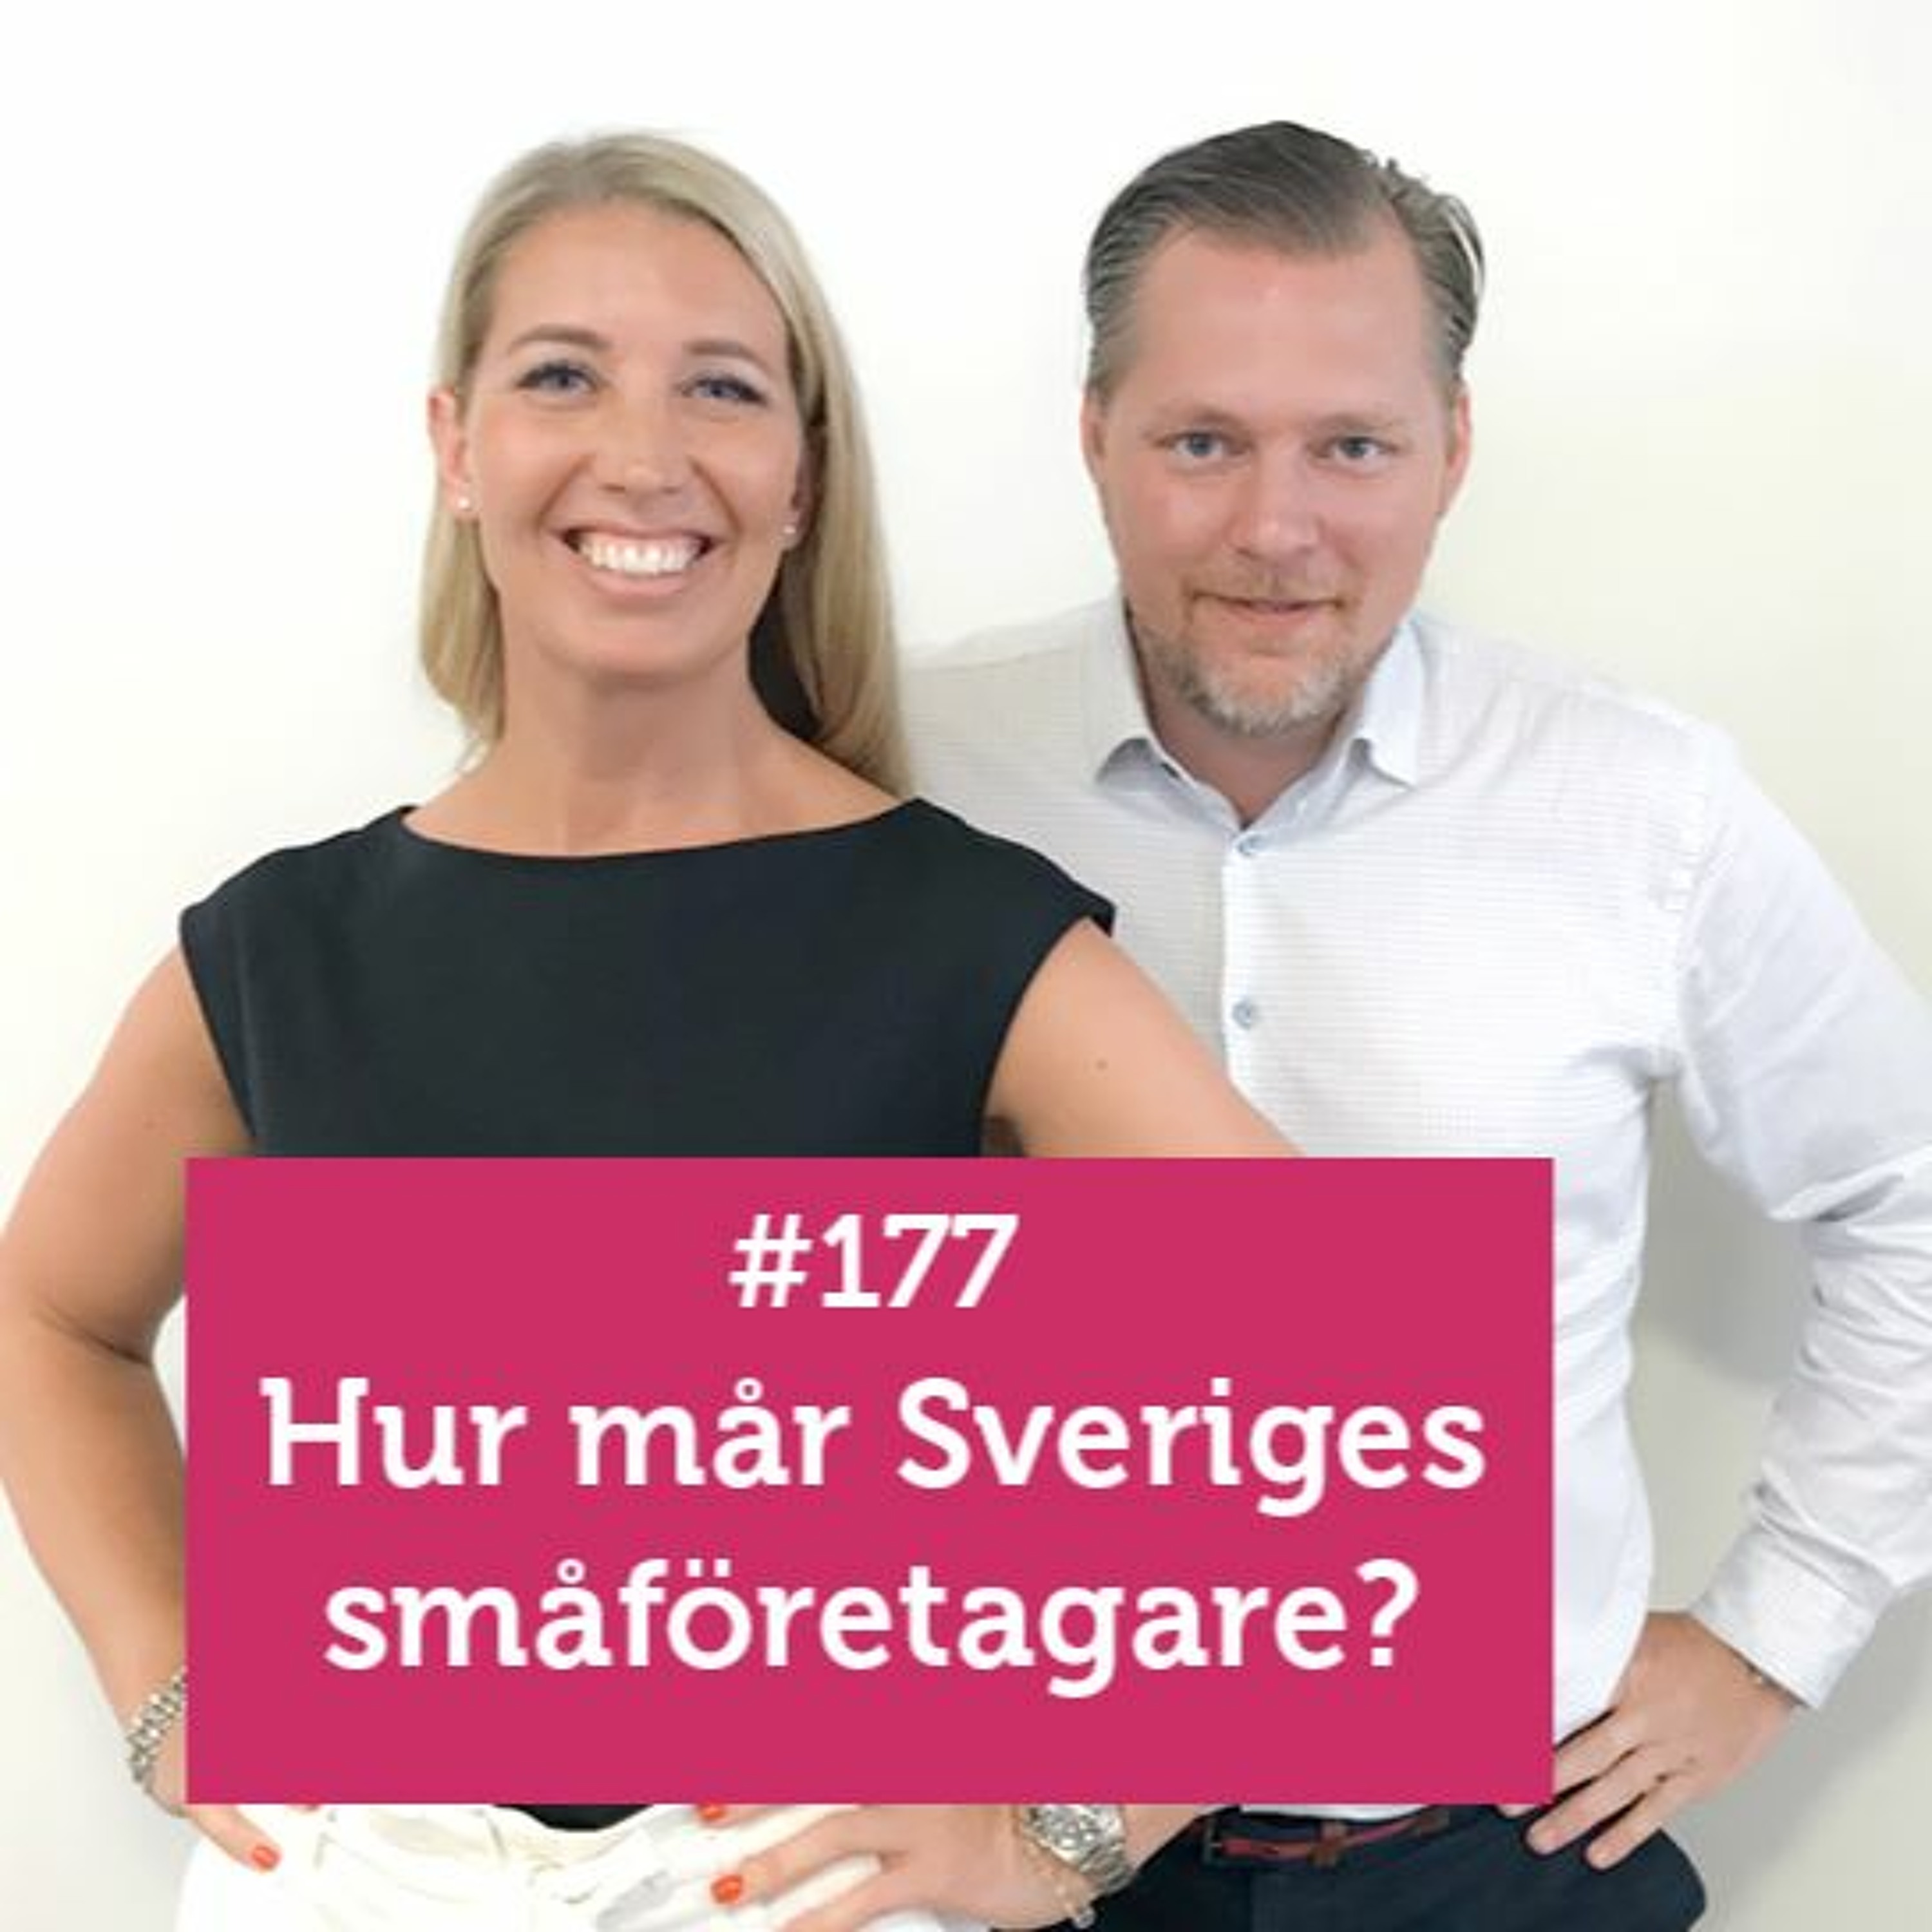 #Företagarpodden #177: Hur mår Sveriges småföretagare?